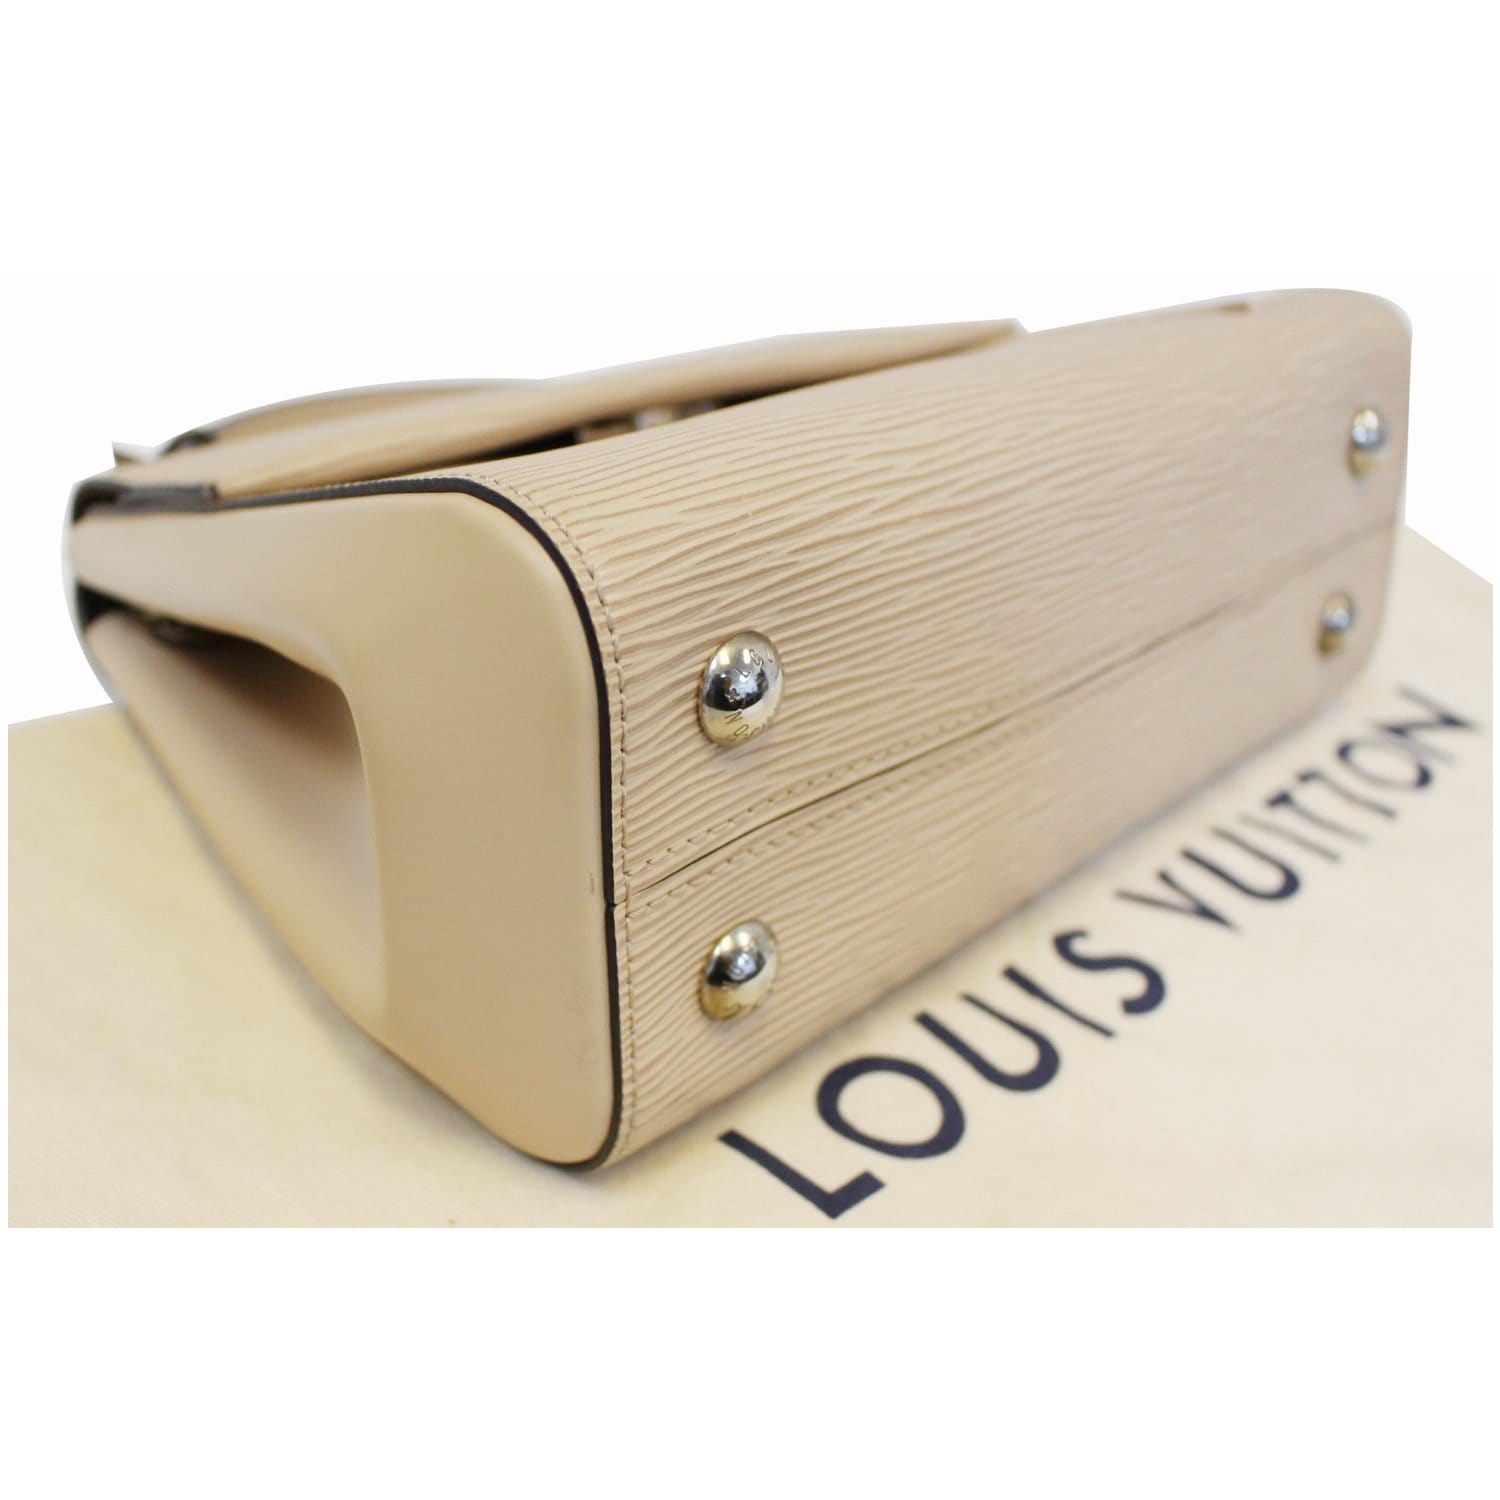 Louis Vuitton Editions Limitées Handbag 215715